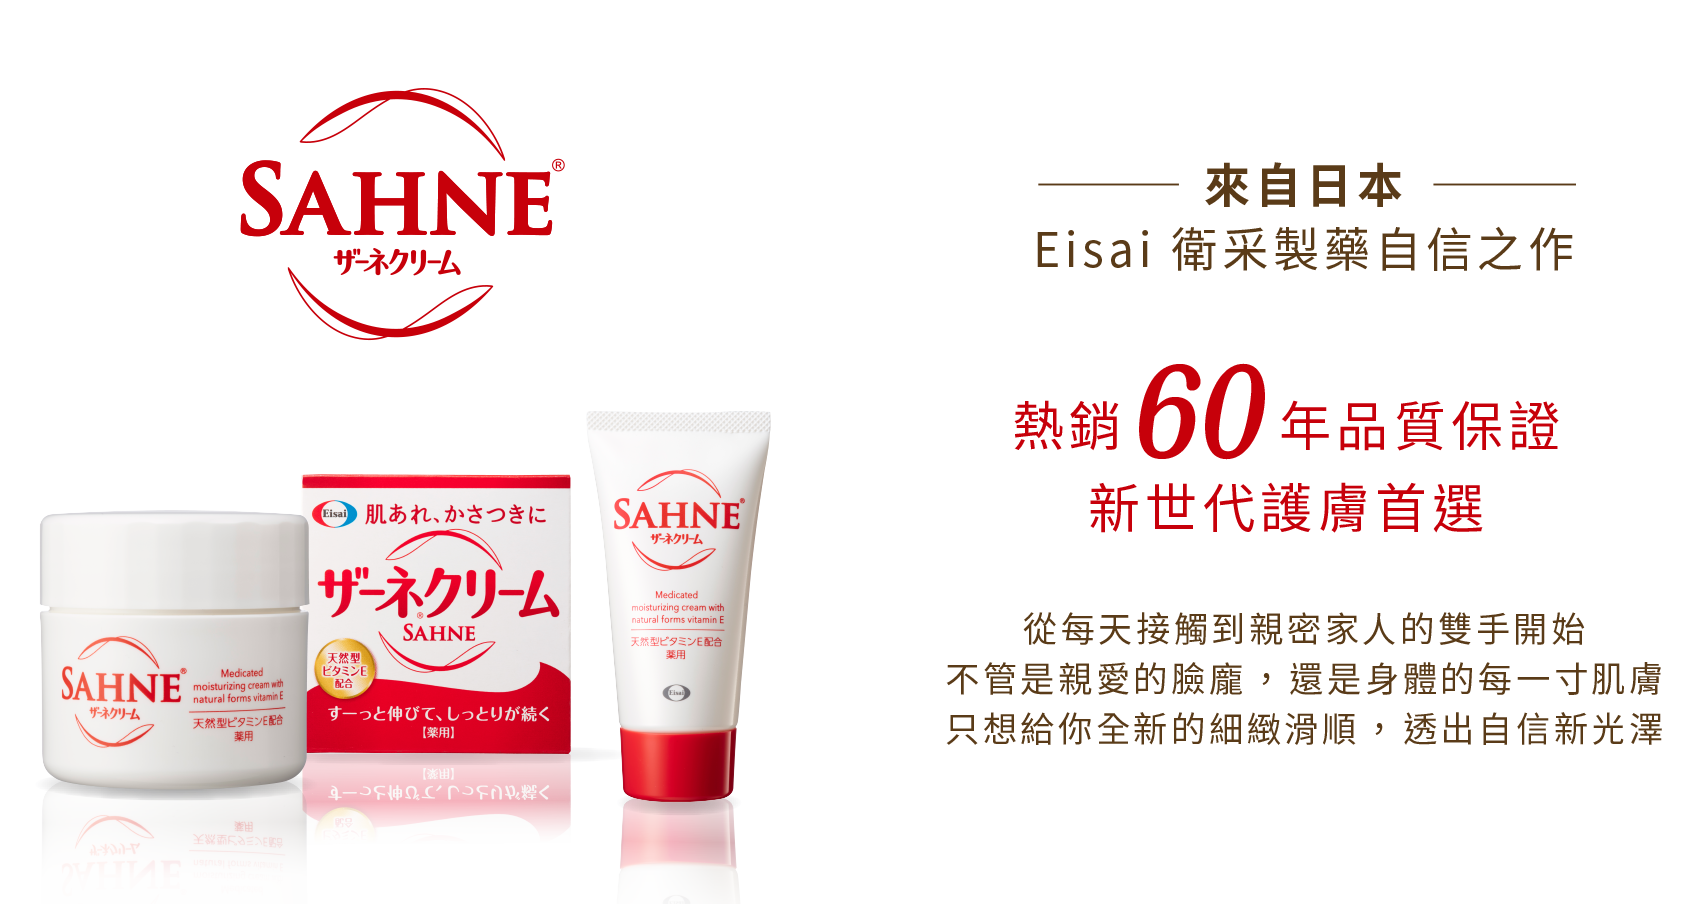 來自日本Eisai衛采製藥自信之作熱銷60年品質保證新世代護膚首選